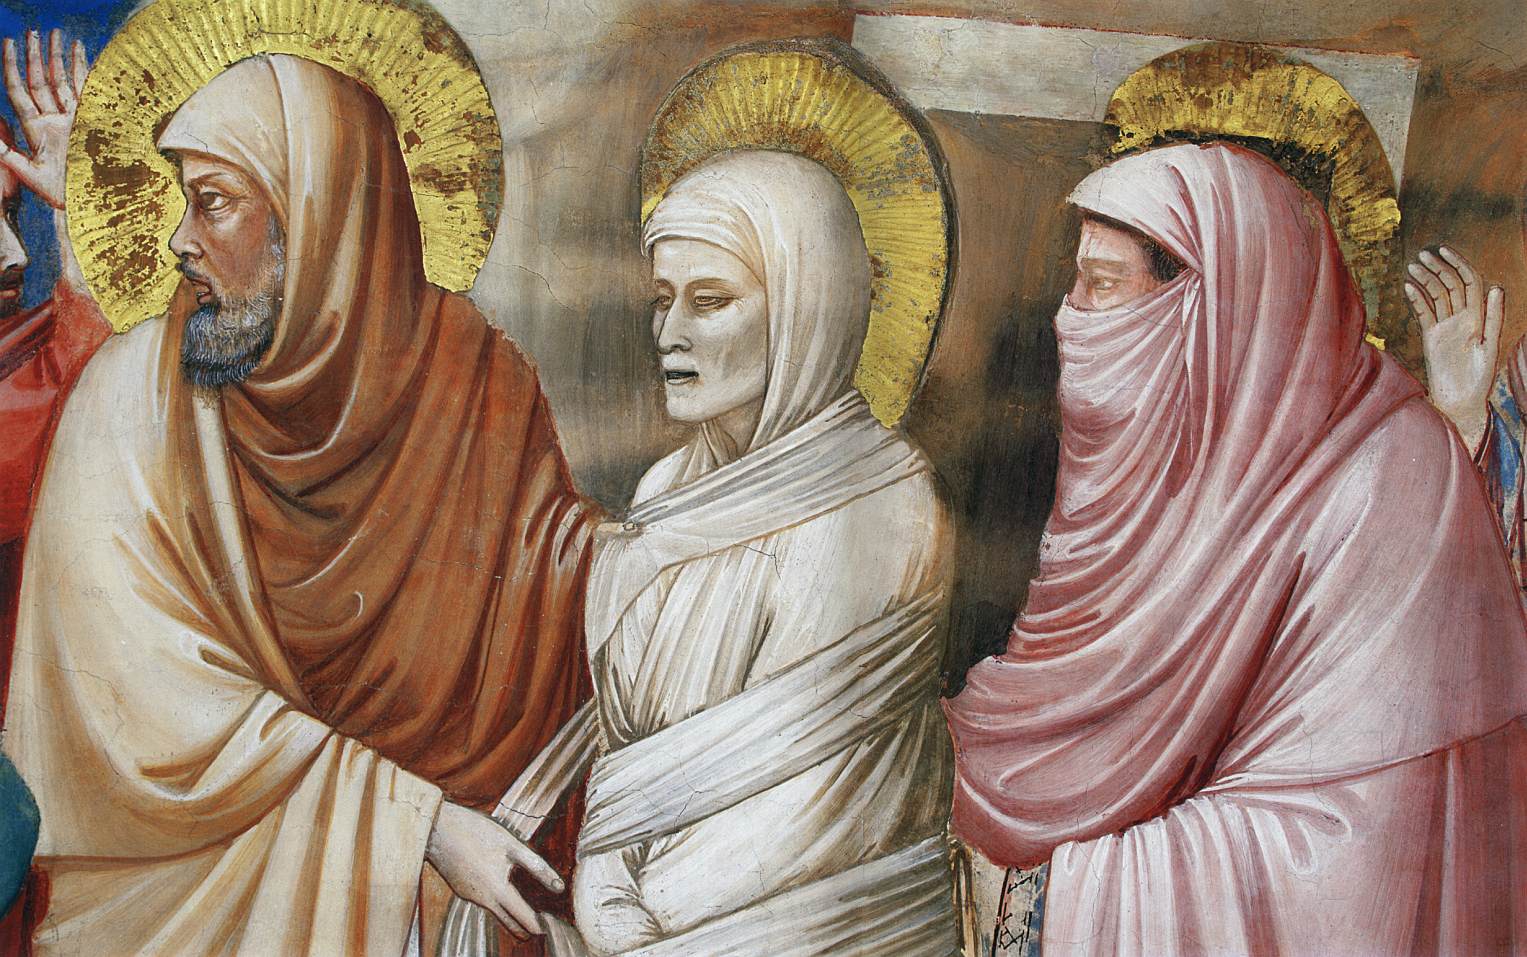 欧洲绘画之父乔托笔下的耶稣生平壁画(上)斯克罗维尼礼拜堂【高清